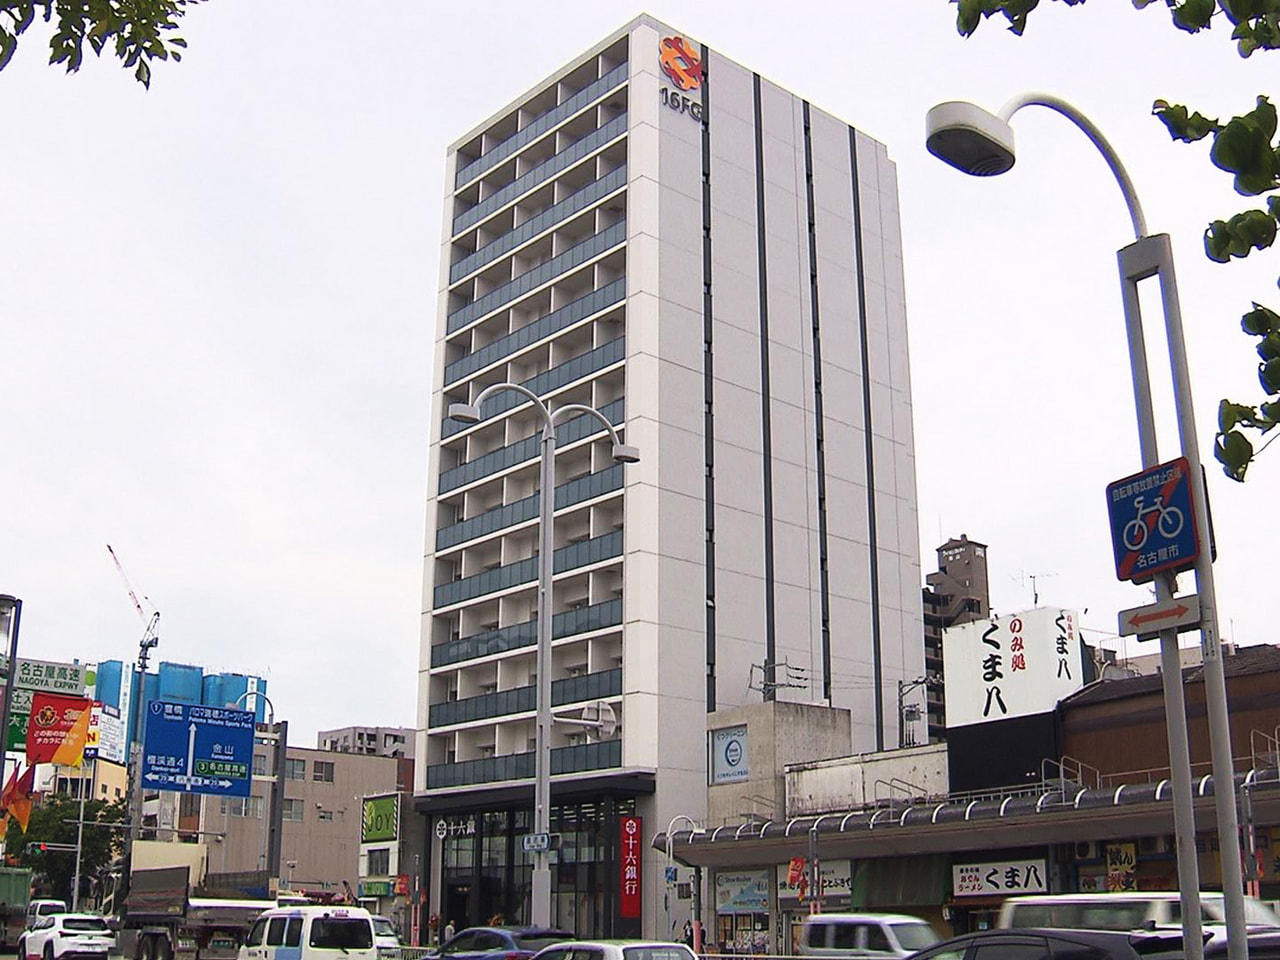 施設の老朽化に伴い建て替えが進められていた名古屋市の十六銀行桜山支店がきょう、共...